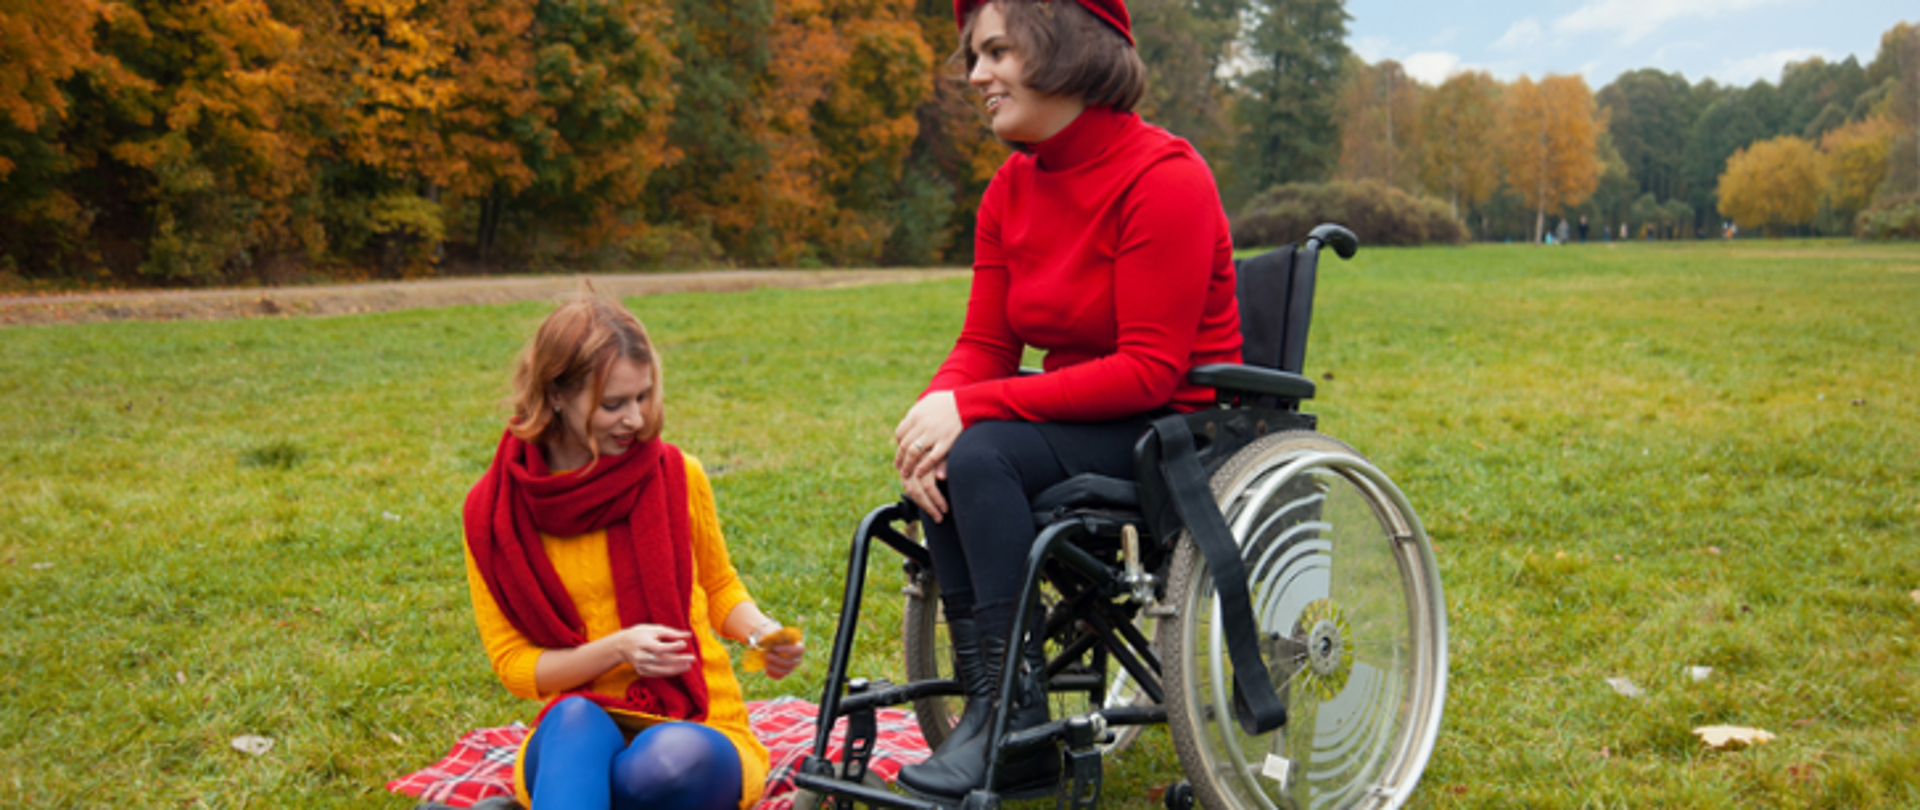 Kobieta z widoczną niepełnosprawnością ruchową na polanie w parku. Obok na kocu siedzi druga kobieta. 